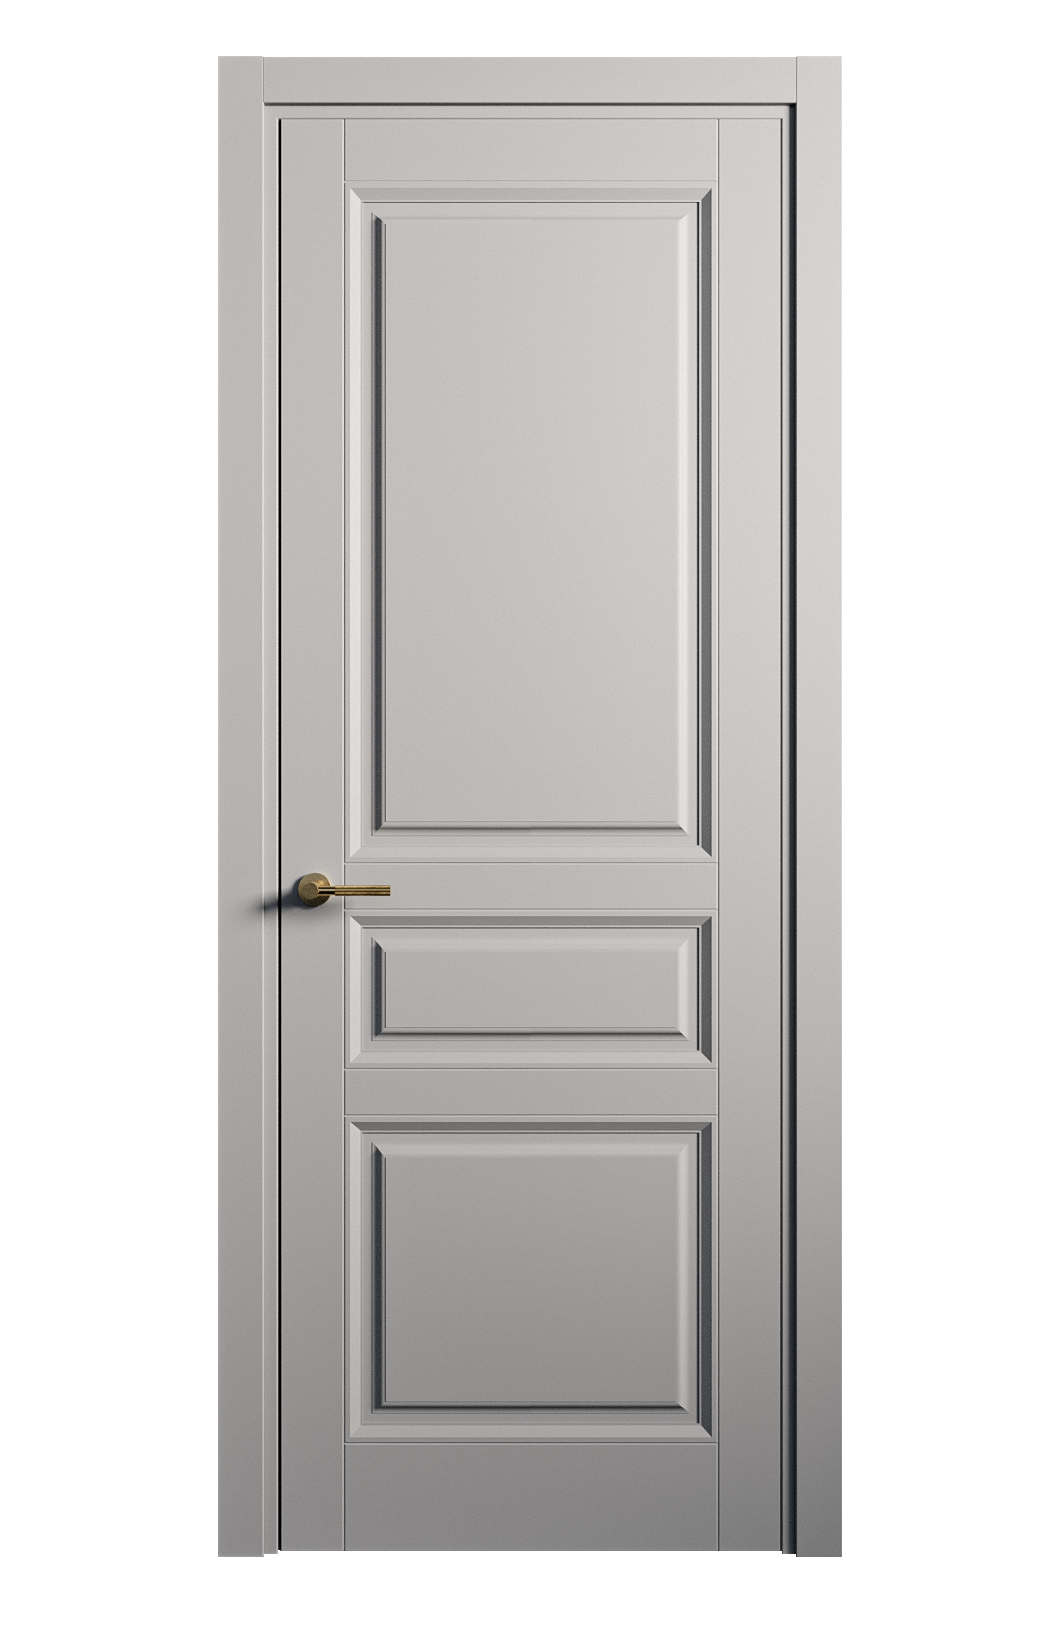 Межкомнатная дверь Venezia-2 глухая эмаль ral 7040 25742